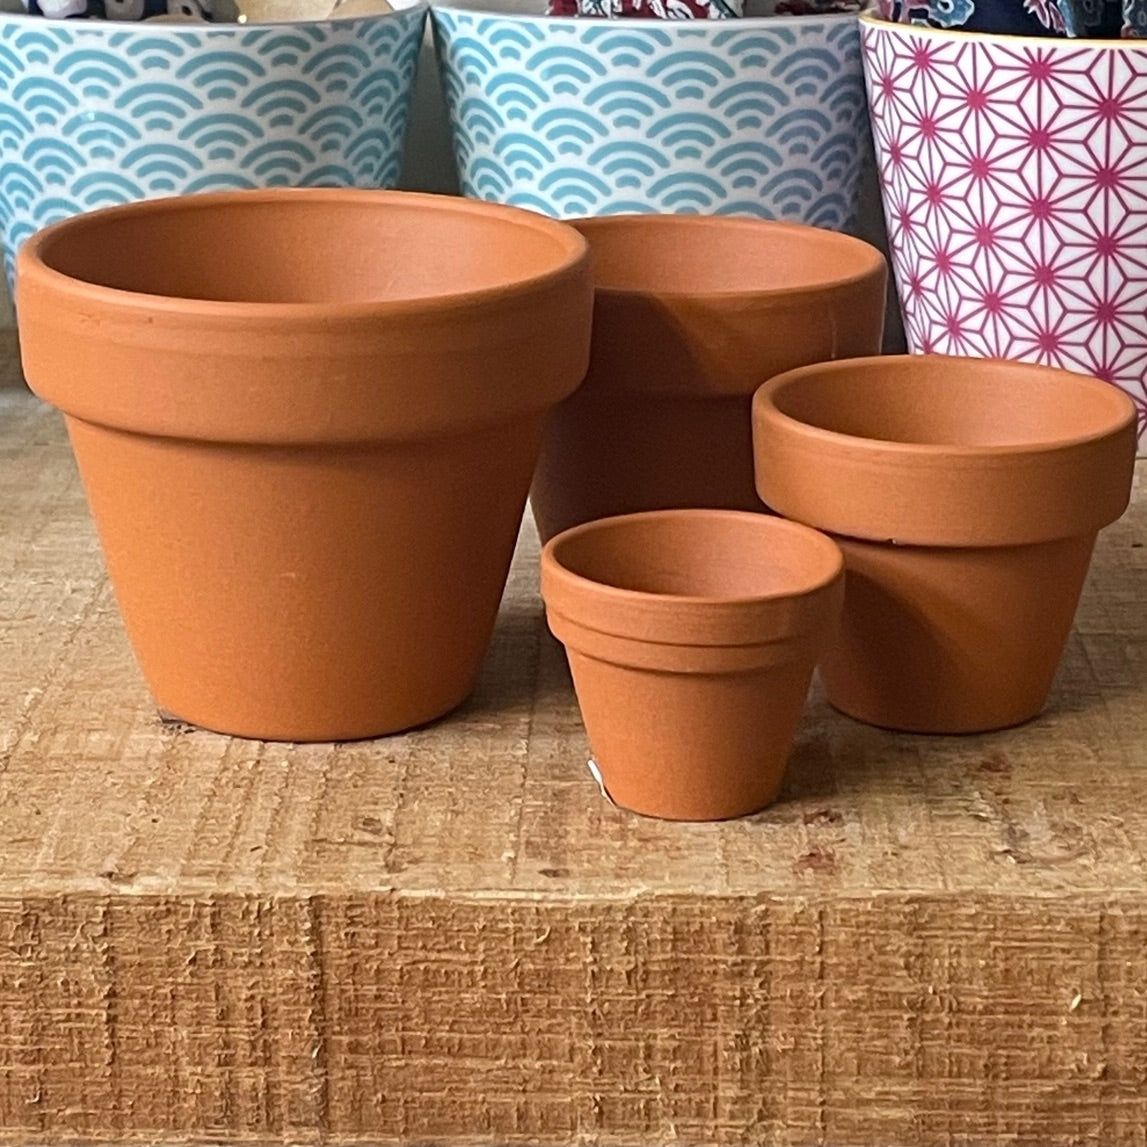 Teeny tiny terracotta pots